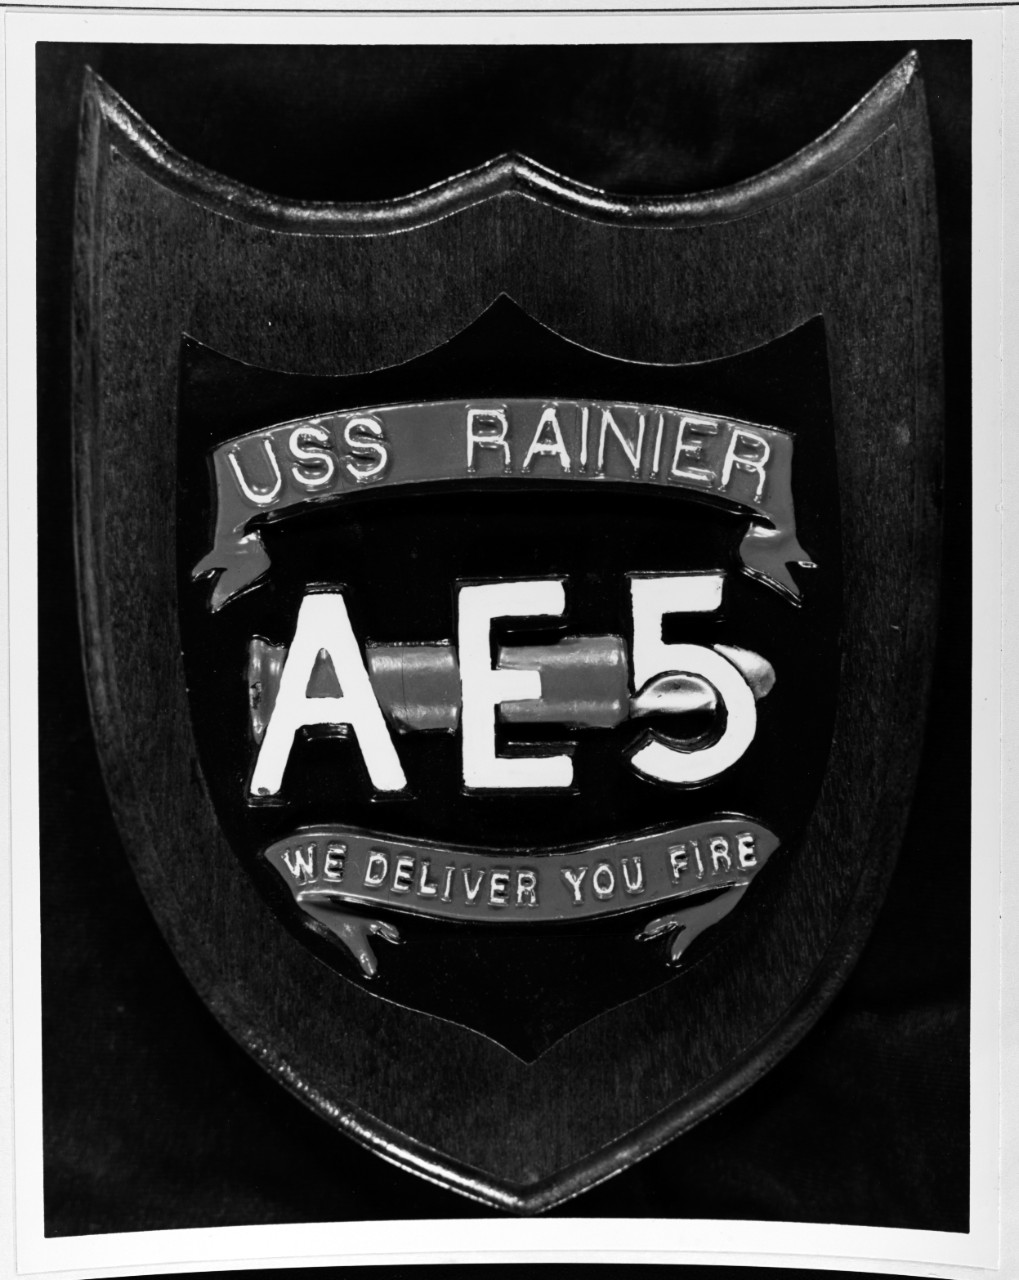 Insignia:  USS RAINIER (AE-5)